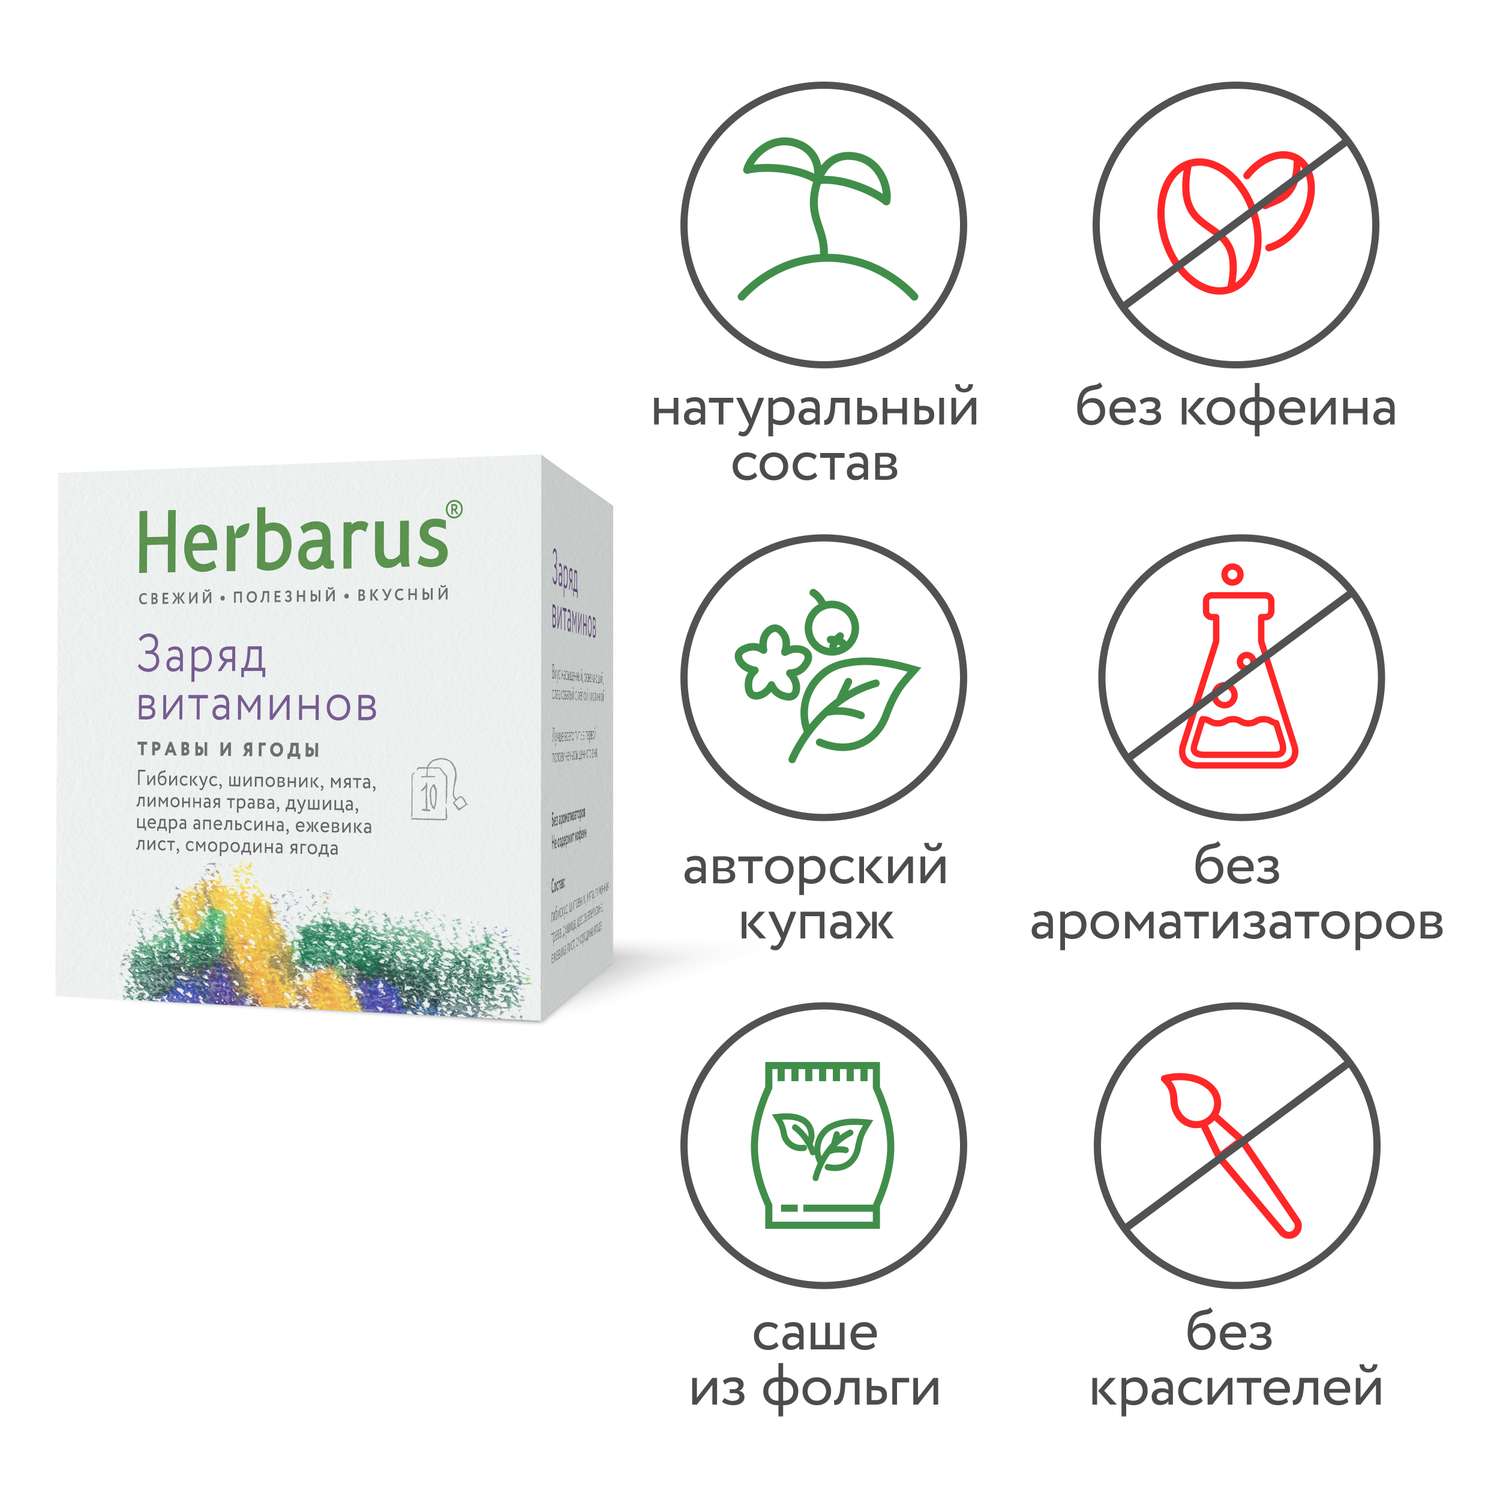 Чайный напиток Herbarus Заряд витаминов 10 пакетиков - фото 3